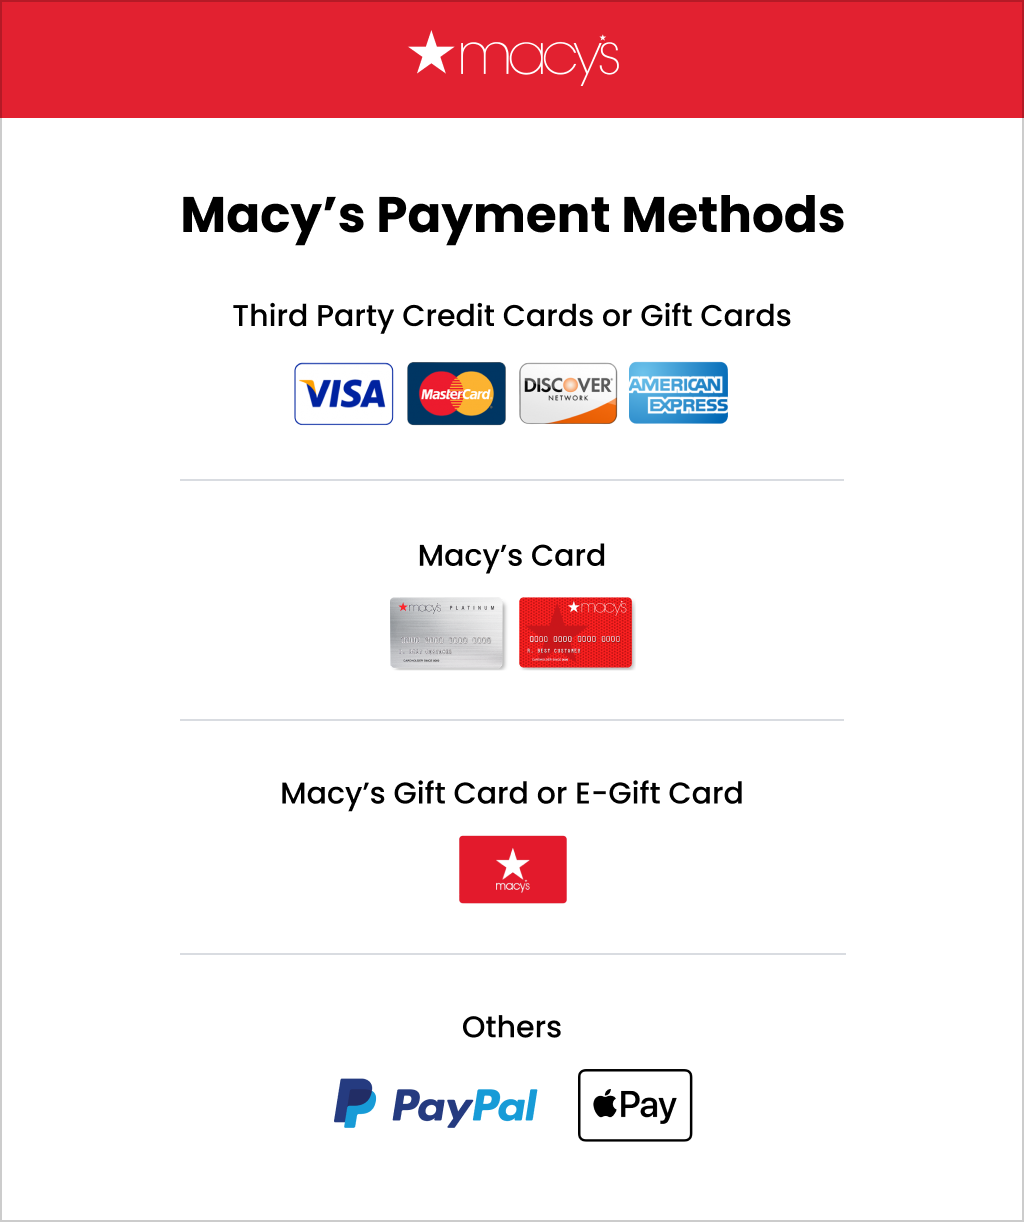 Macy's Payment Methods